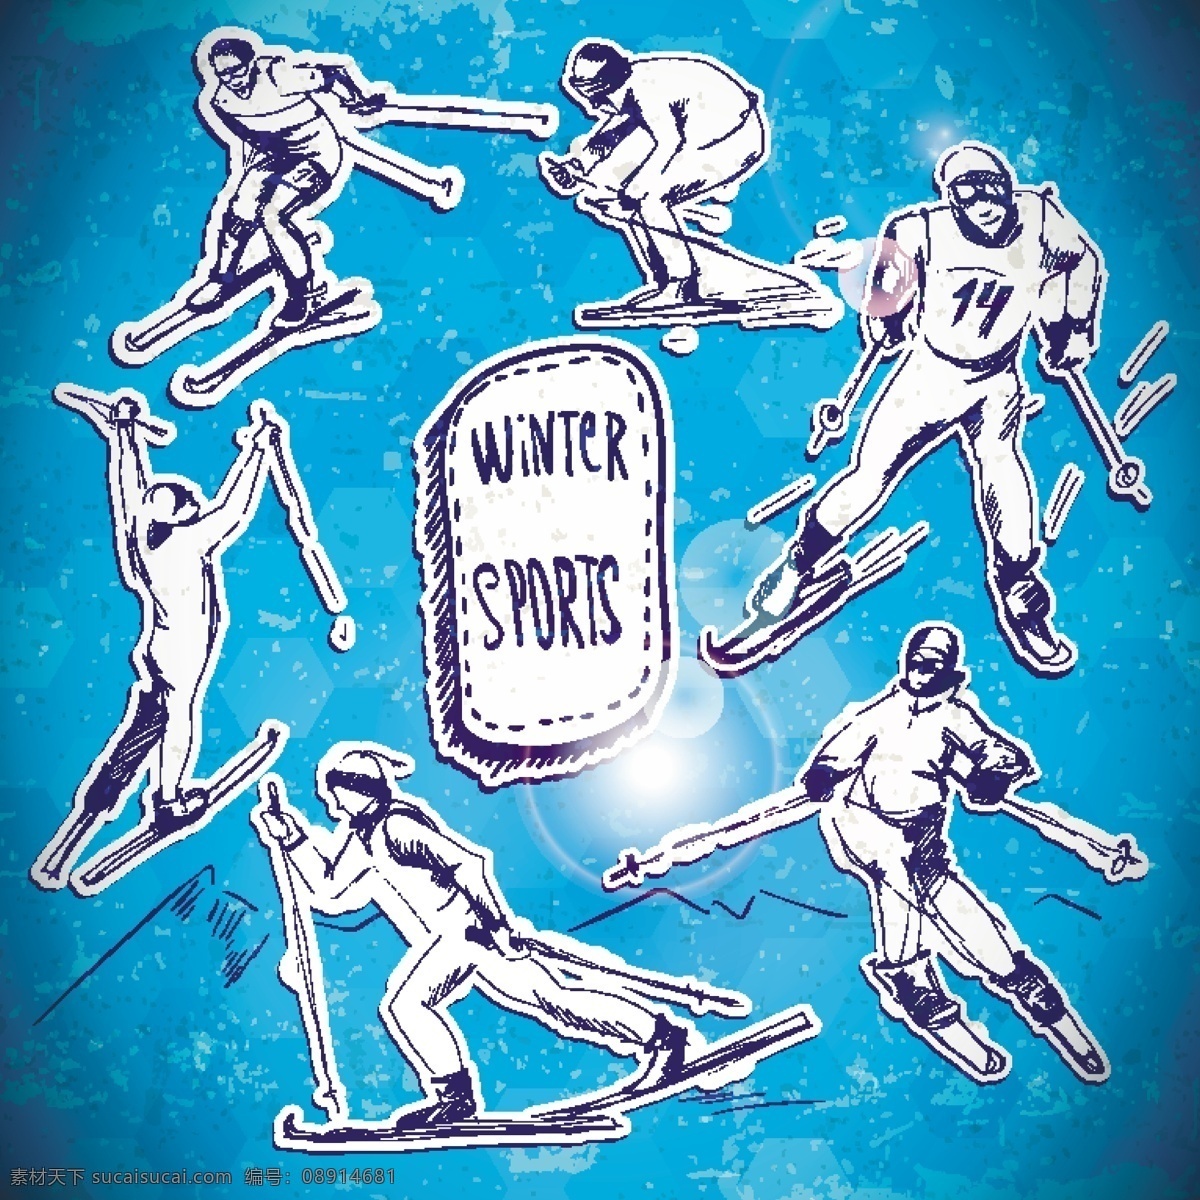 索契 冬奥会 滑雪 赛事 插画 矢量 索契冬奥会 比赛 滑板 冬季 冬天 运动员 人物 手绘 体育 体育运动 运动 背景 海报 画册 文化艺术